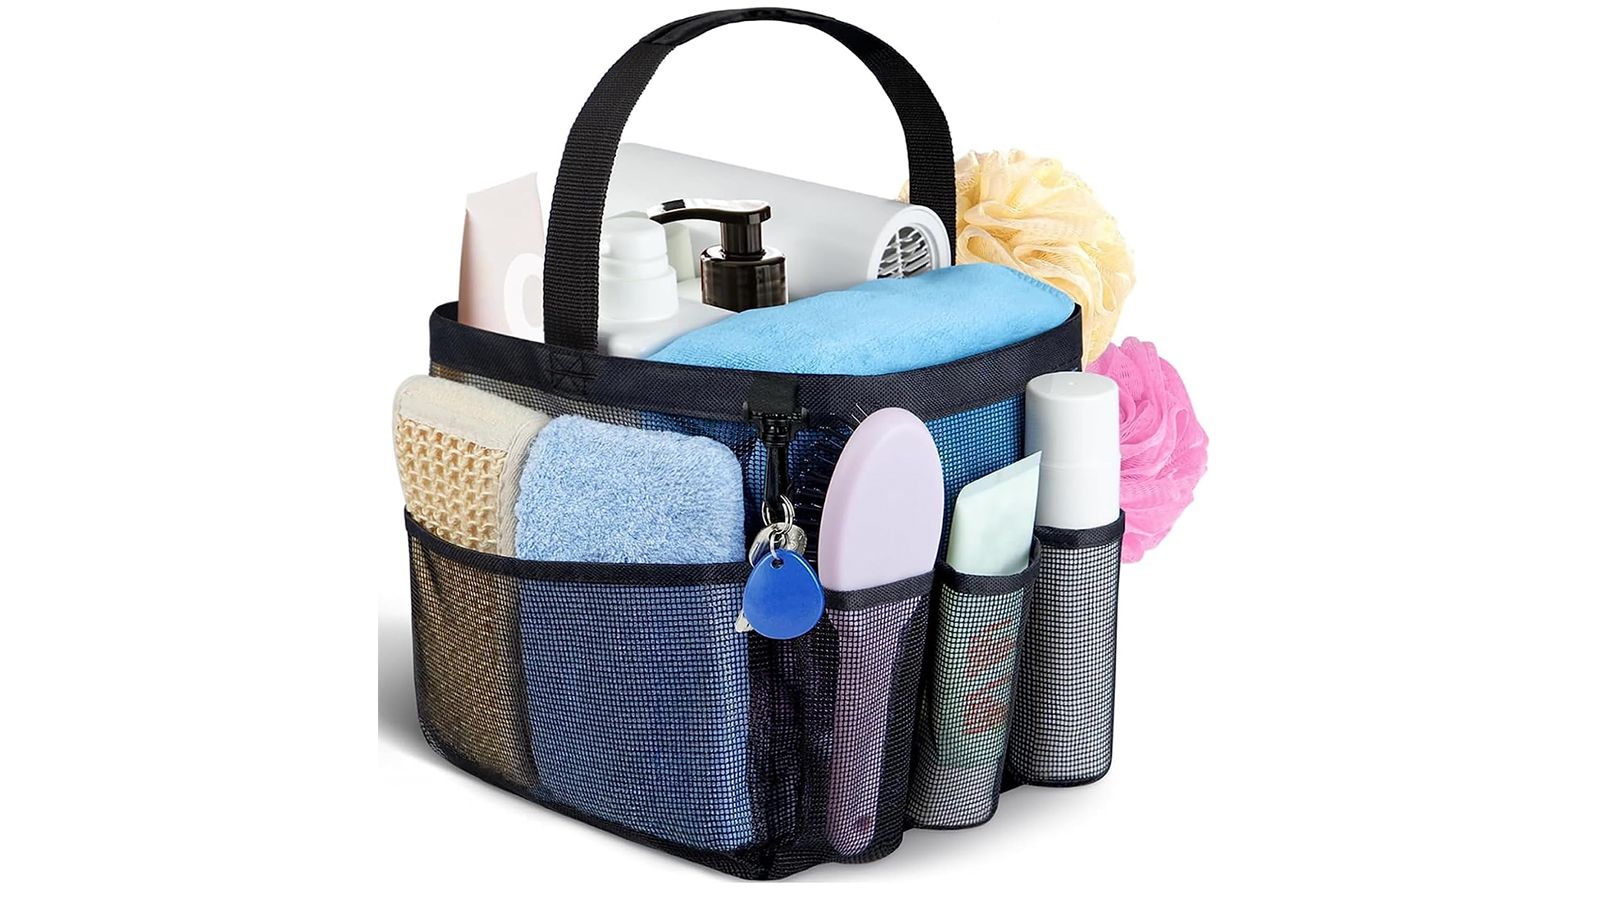 Attmu Mesh Shower Caddy Portable for College Dorm Room Essentials